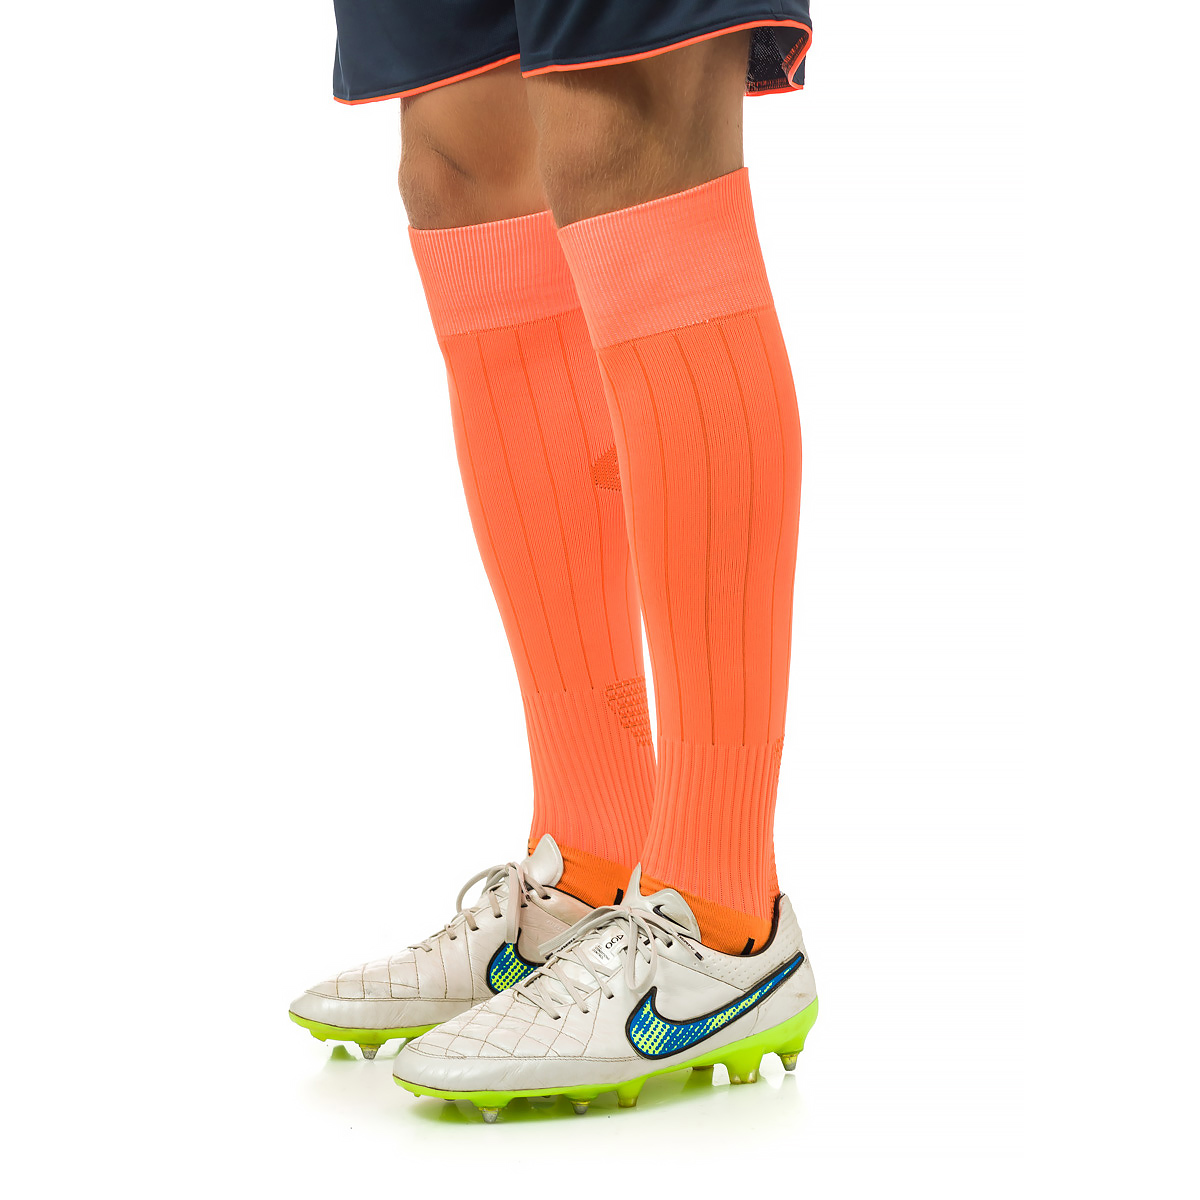 Гетры футбольные Europaw 001 с трикотажным носком